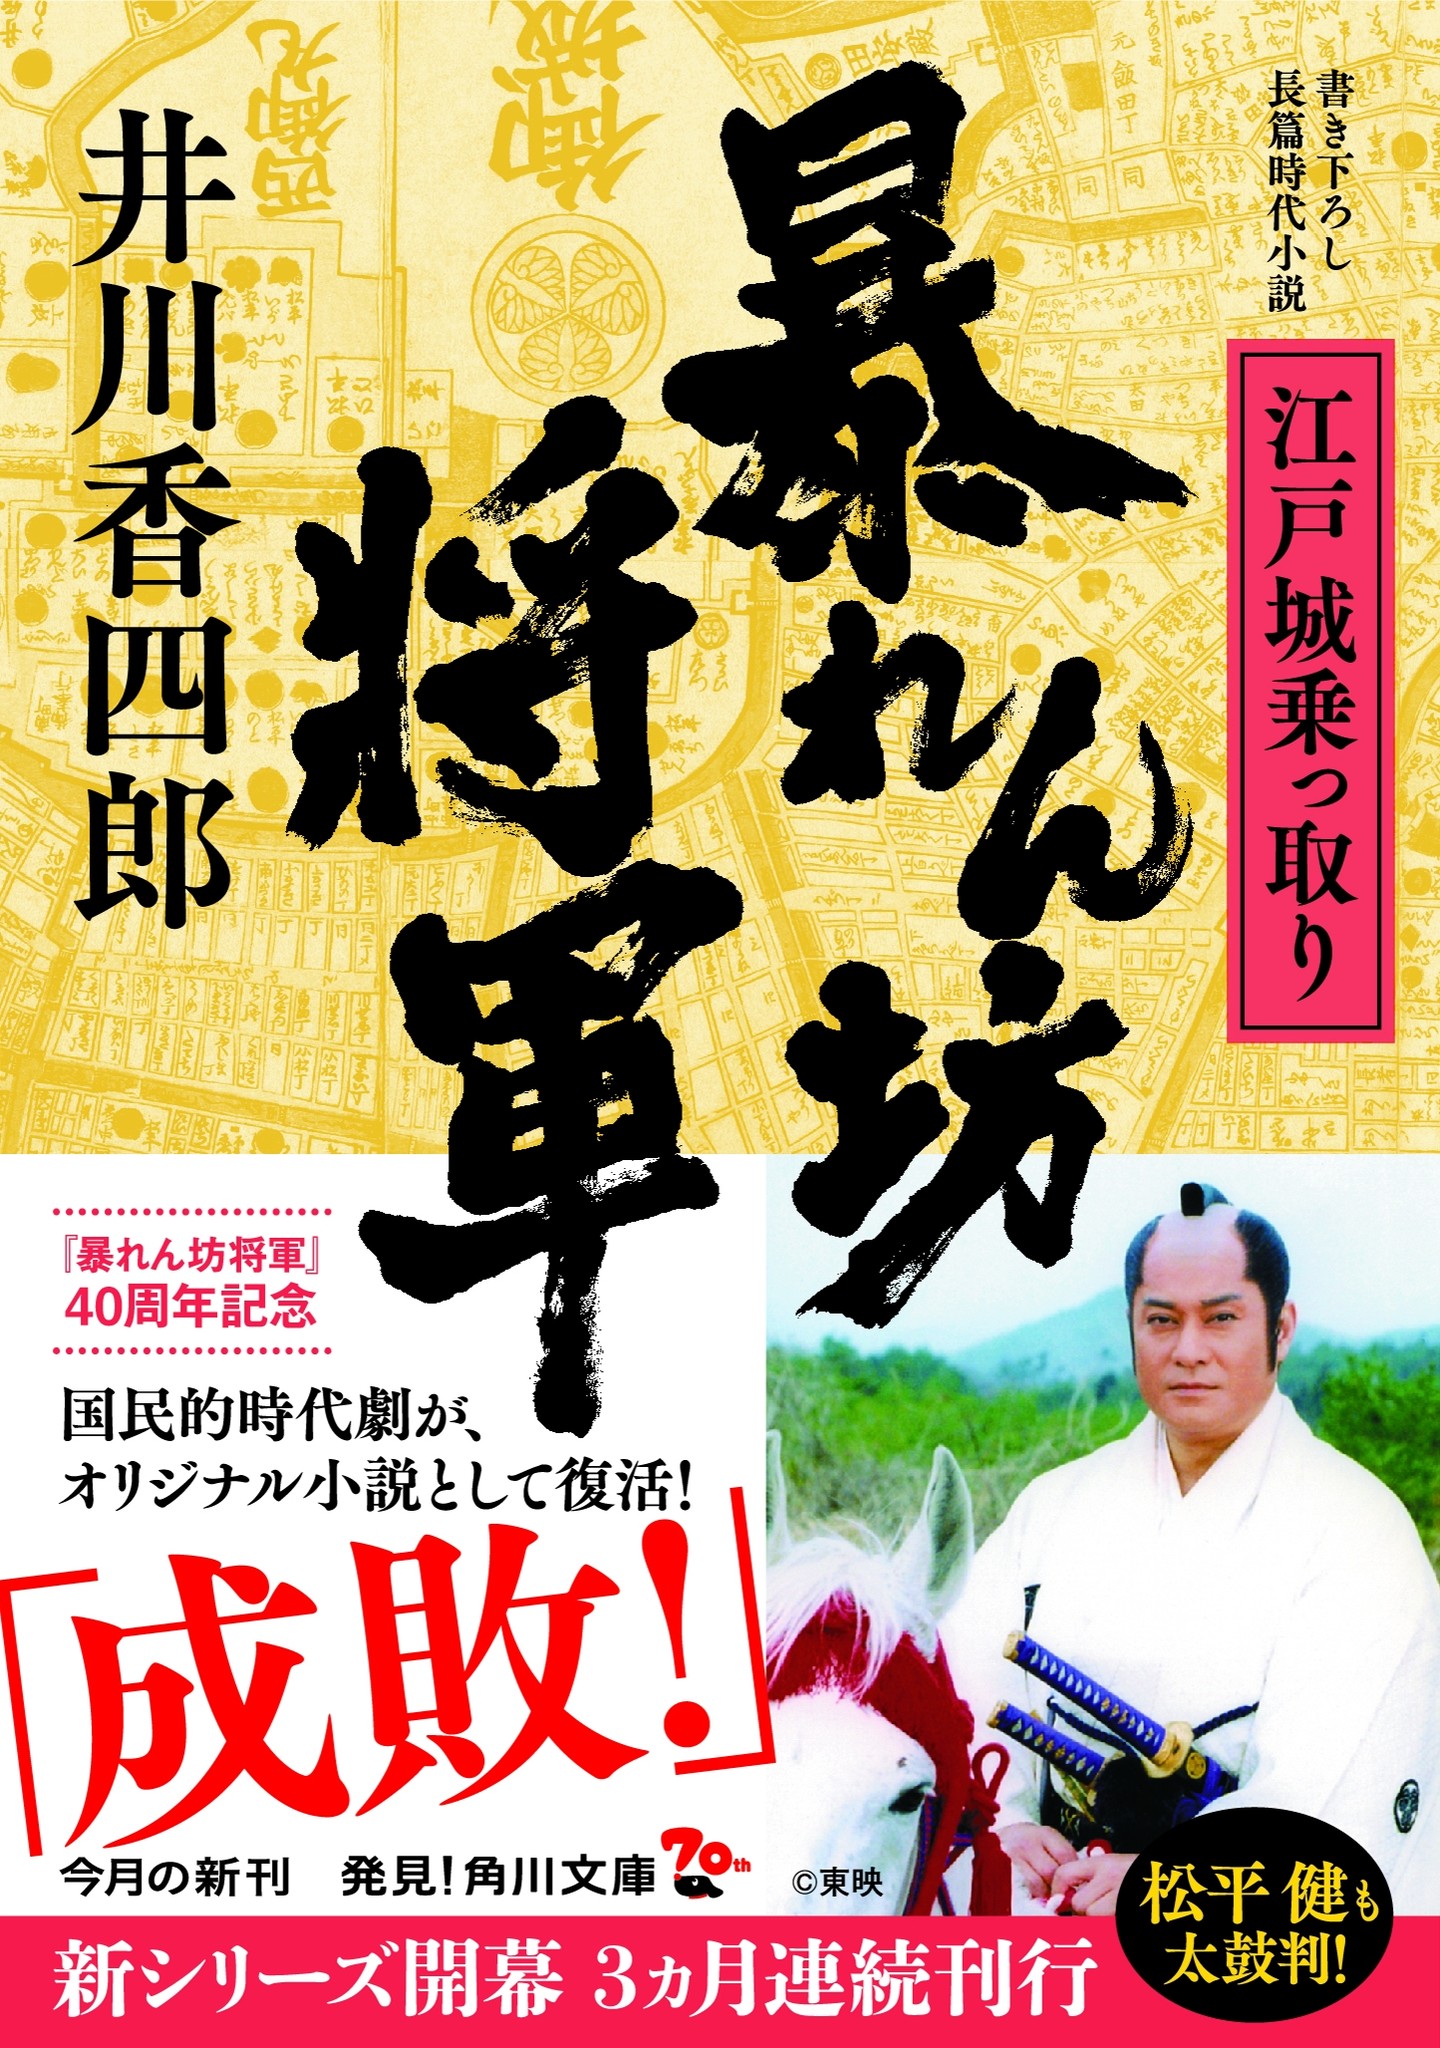 暴れん坊将軍 がオリジナル時代小説として蘇る 松平健 井川香四郎対談 伝説の 彗星回 誕生の裏話も 株式会社kadokawaのプレスリリース